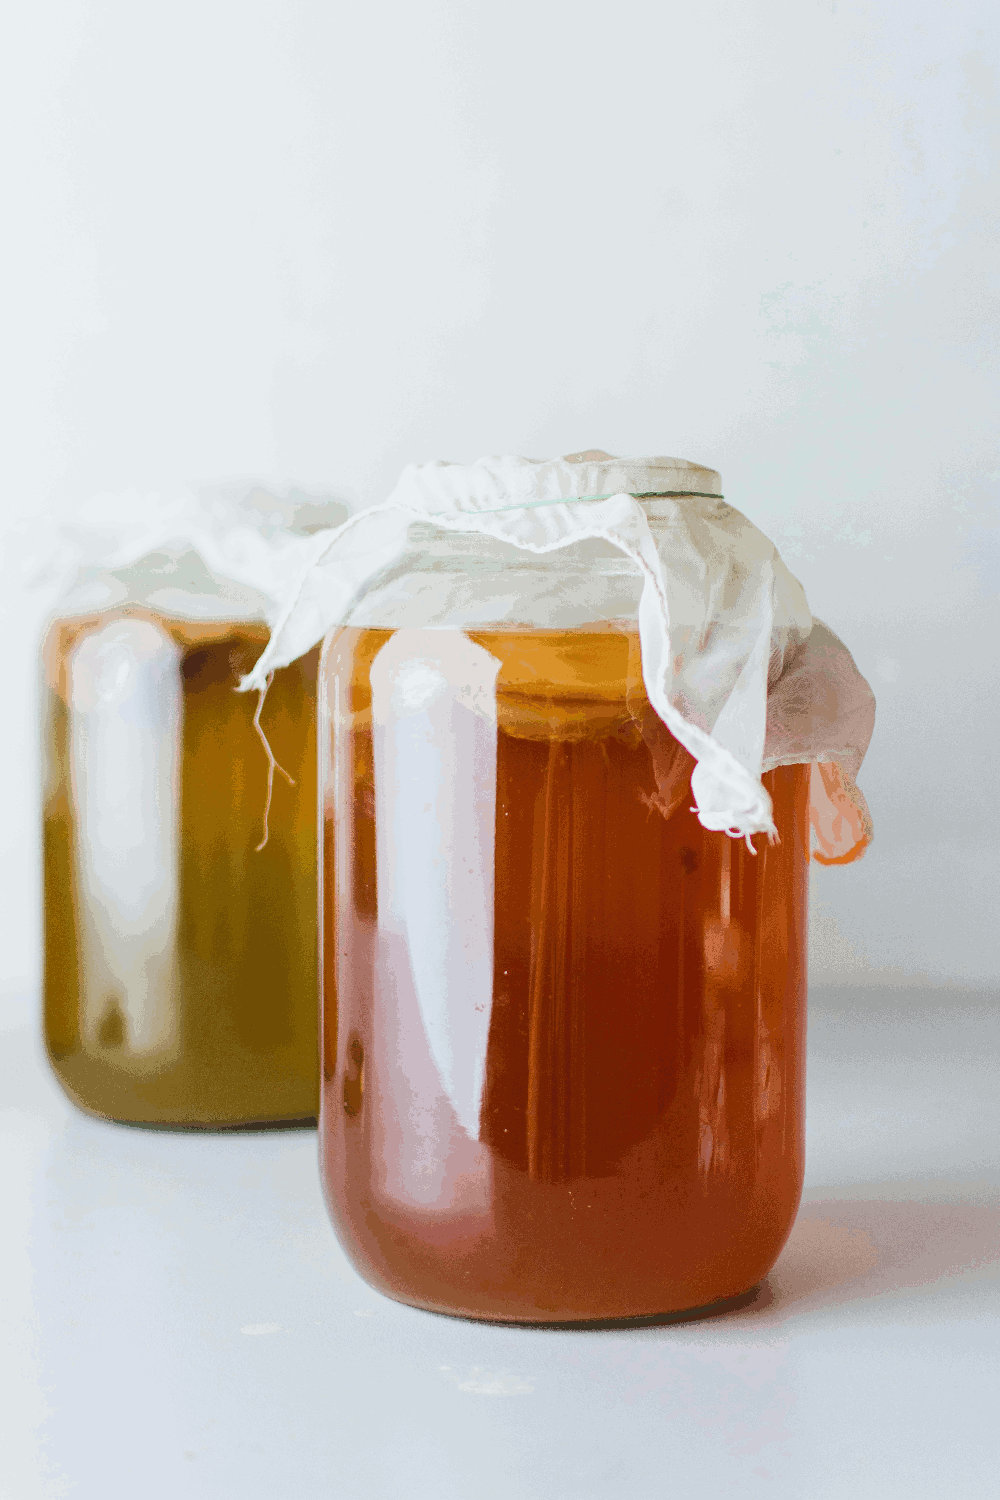 jars of honey by Klara Avsenik